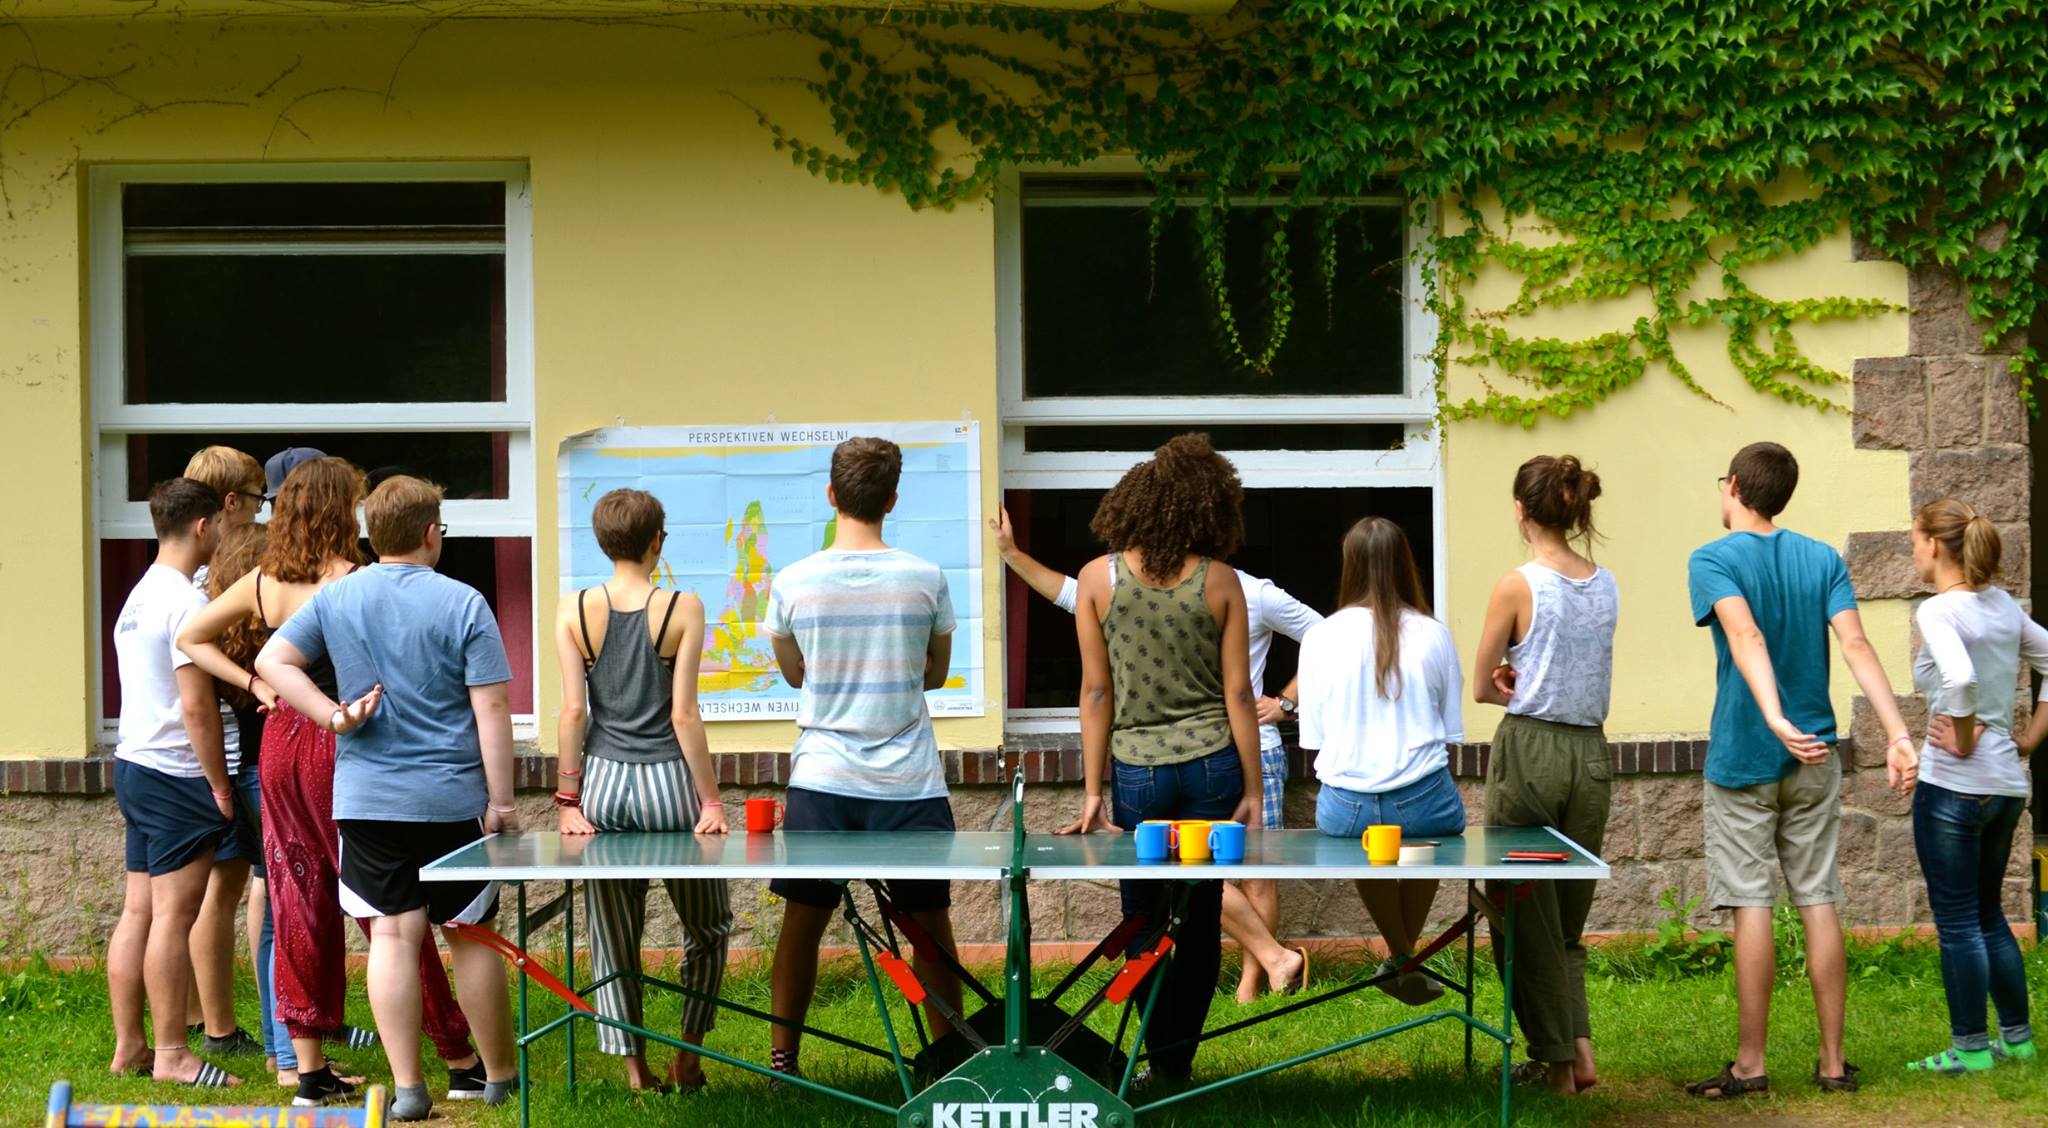 Jugendliche von hinten mit Blick zu einer Hauswand, an der eine umgedrehte Weltkarte hängt mit dem Titel "Perspektiven wechseln"